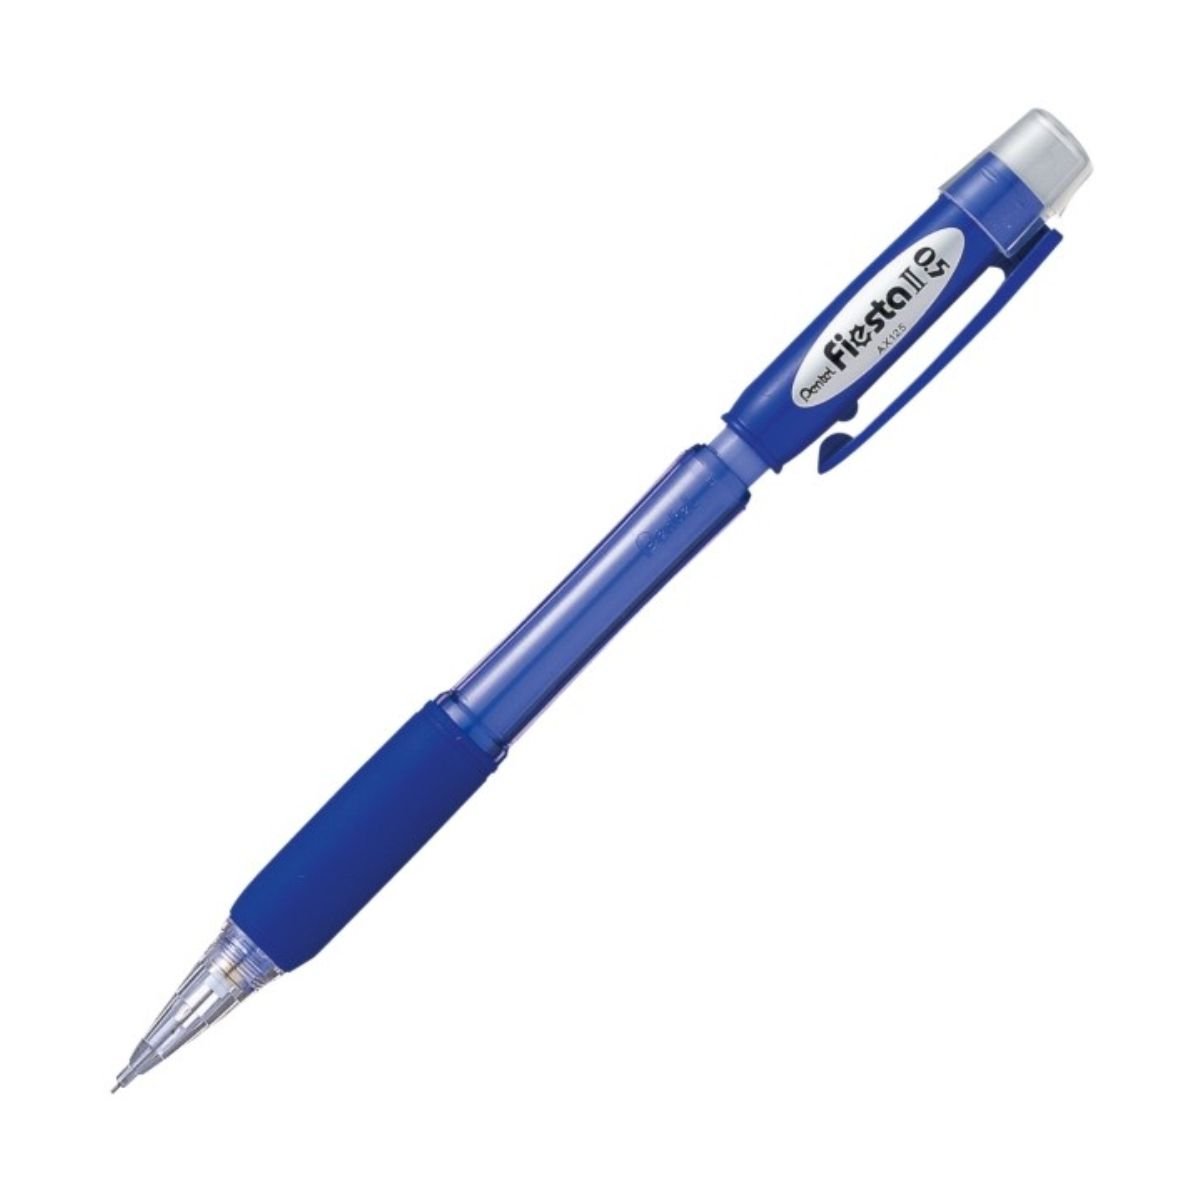 Zdjęcia - Ołówek Pentel  Automatyczny  Ax125 W Niebieskiej Obudowie 